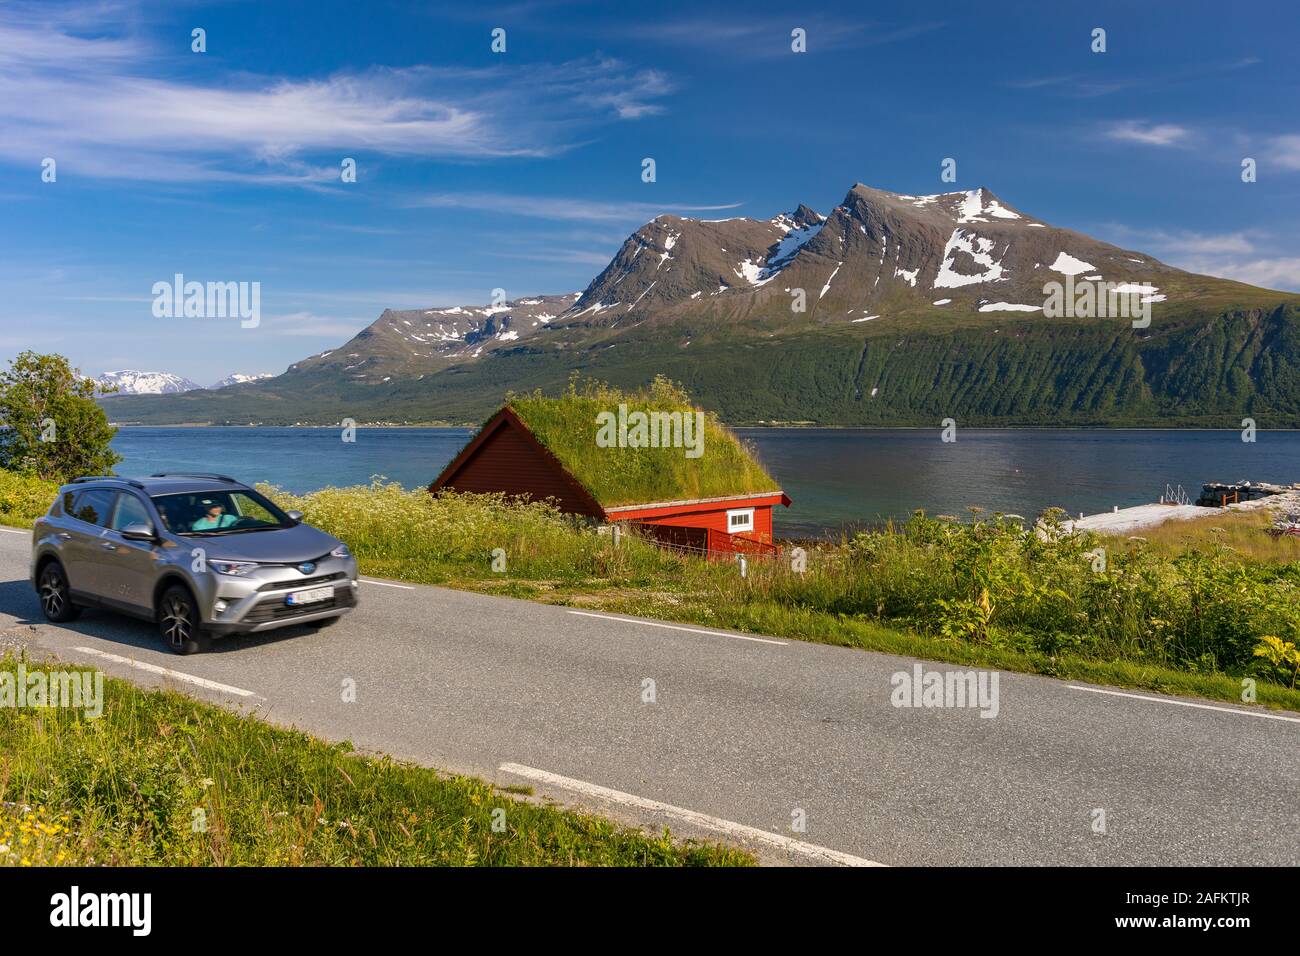 L'ÎLE DE KVALØYA, BAKKEJORD, NORVÈGE - automobile passe toit gazon immeuble sur l'île de Kvaløya en premier plan, et vue de l'Straumsfjorden fjord et montagnes. Banque D'Images